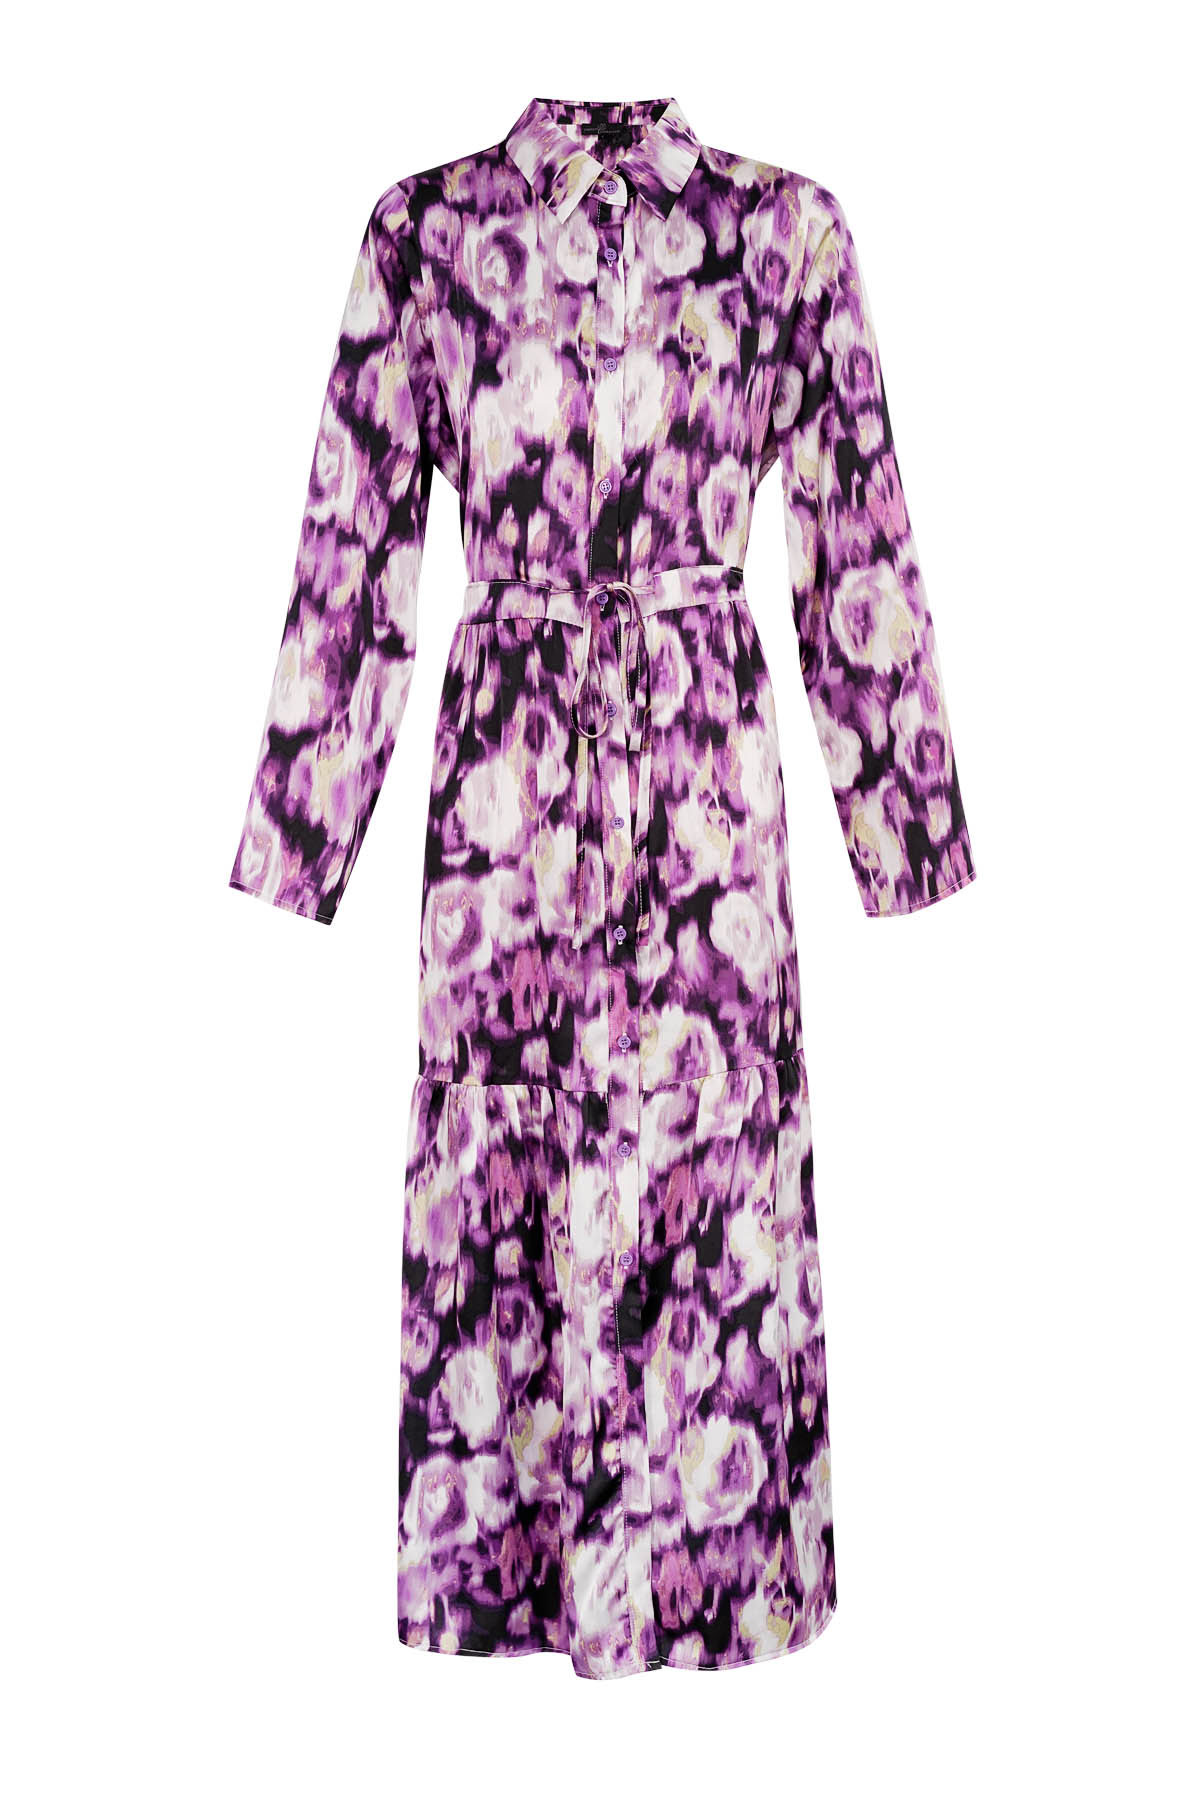 Maxi dress floral print purple 